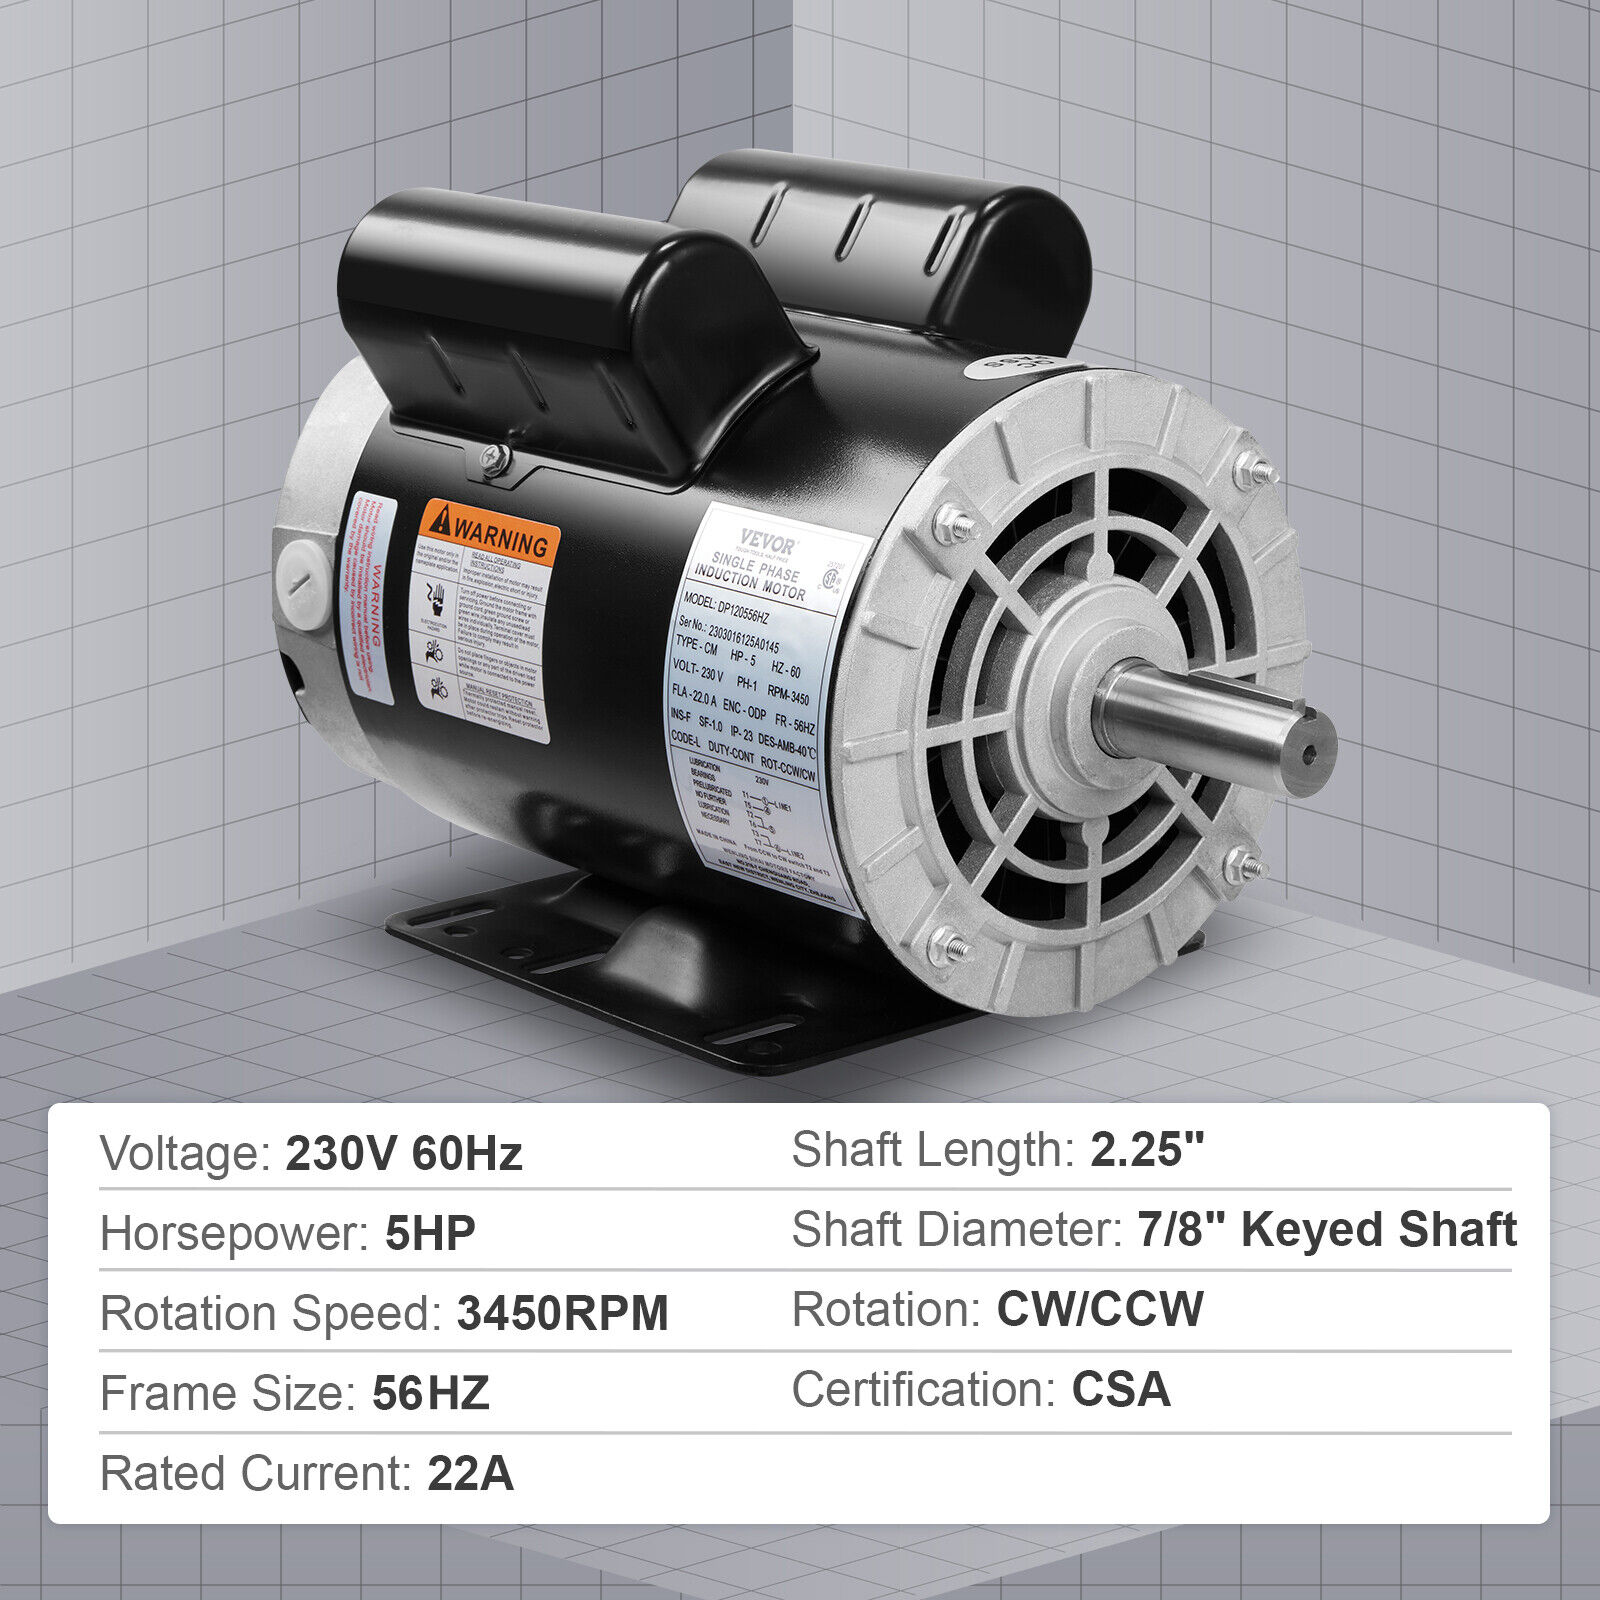 VEVOR 5 HP Air Compressor Electric Motor 230V 22A 56HZ Frame CW/CCW Rotation